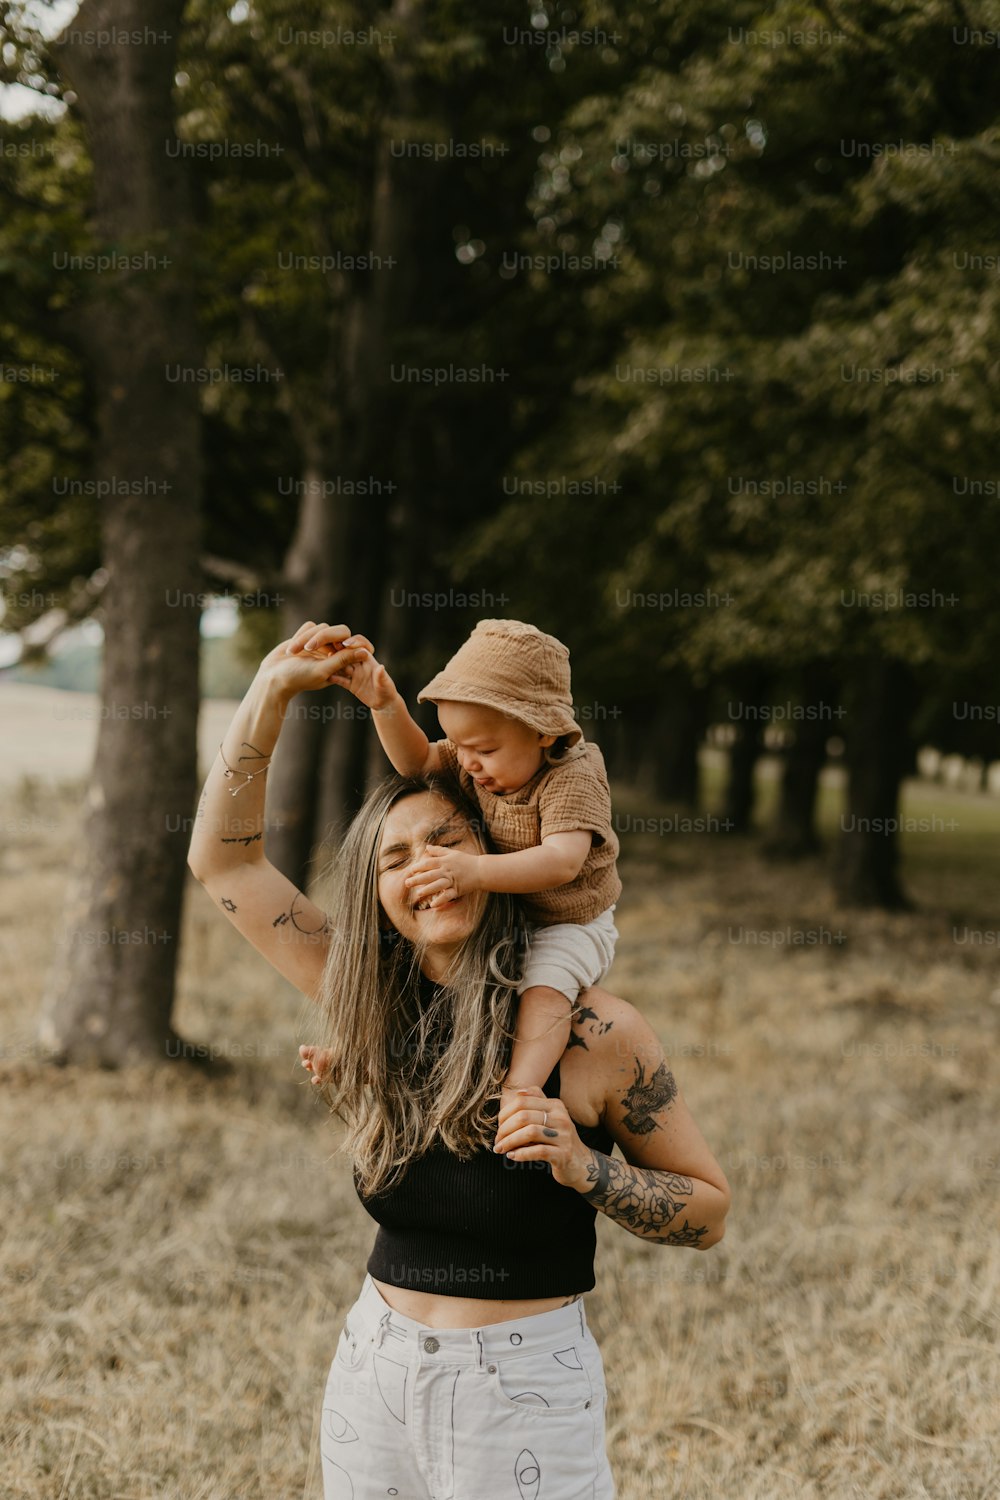 Eine Frau, die ein Kind im Arm hält